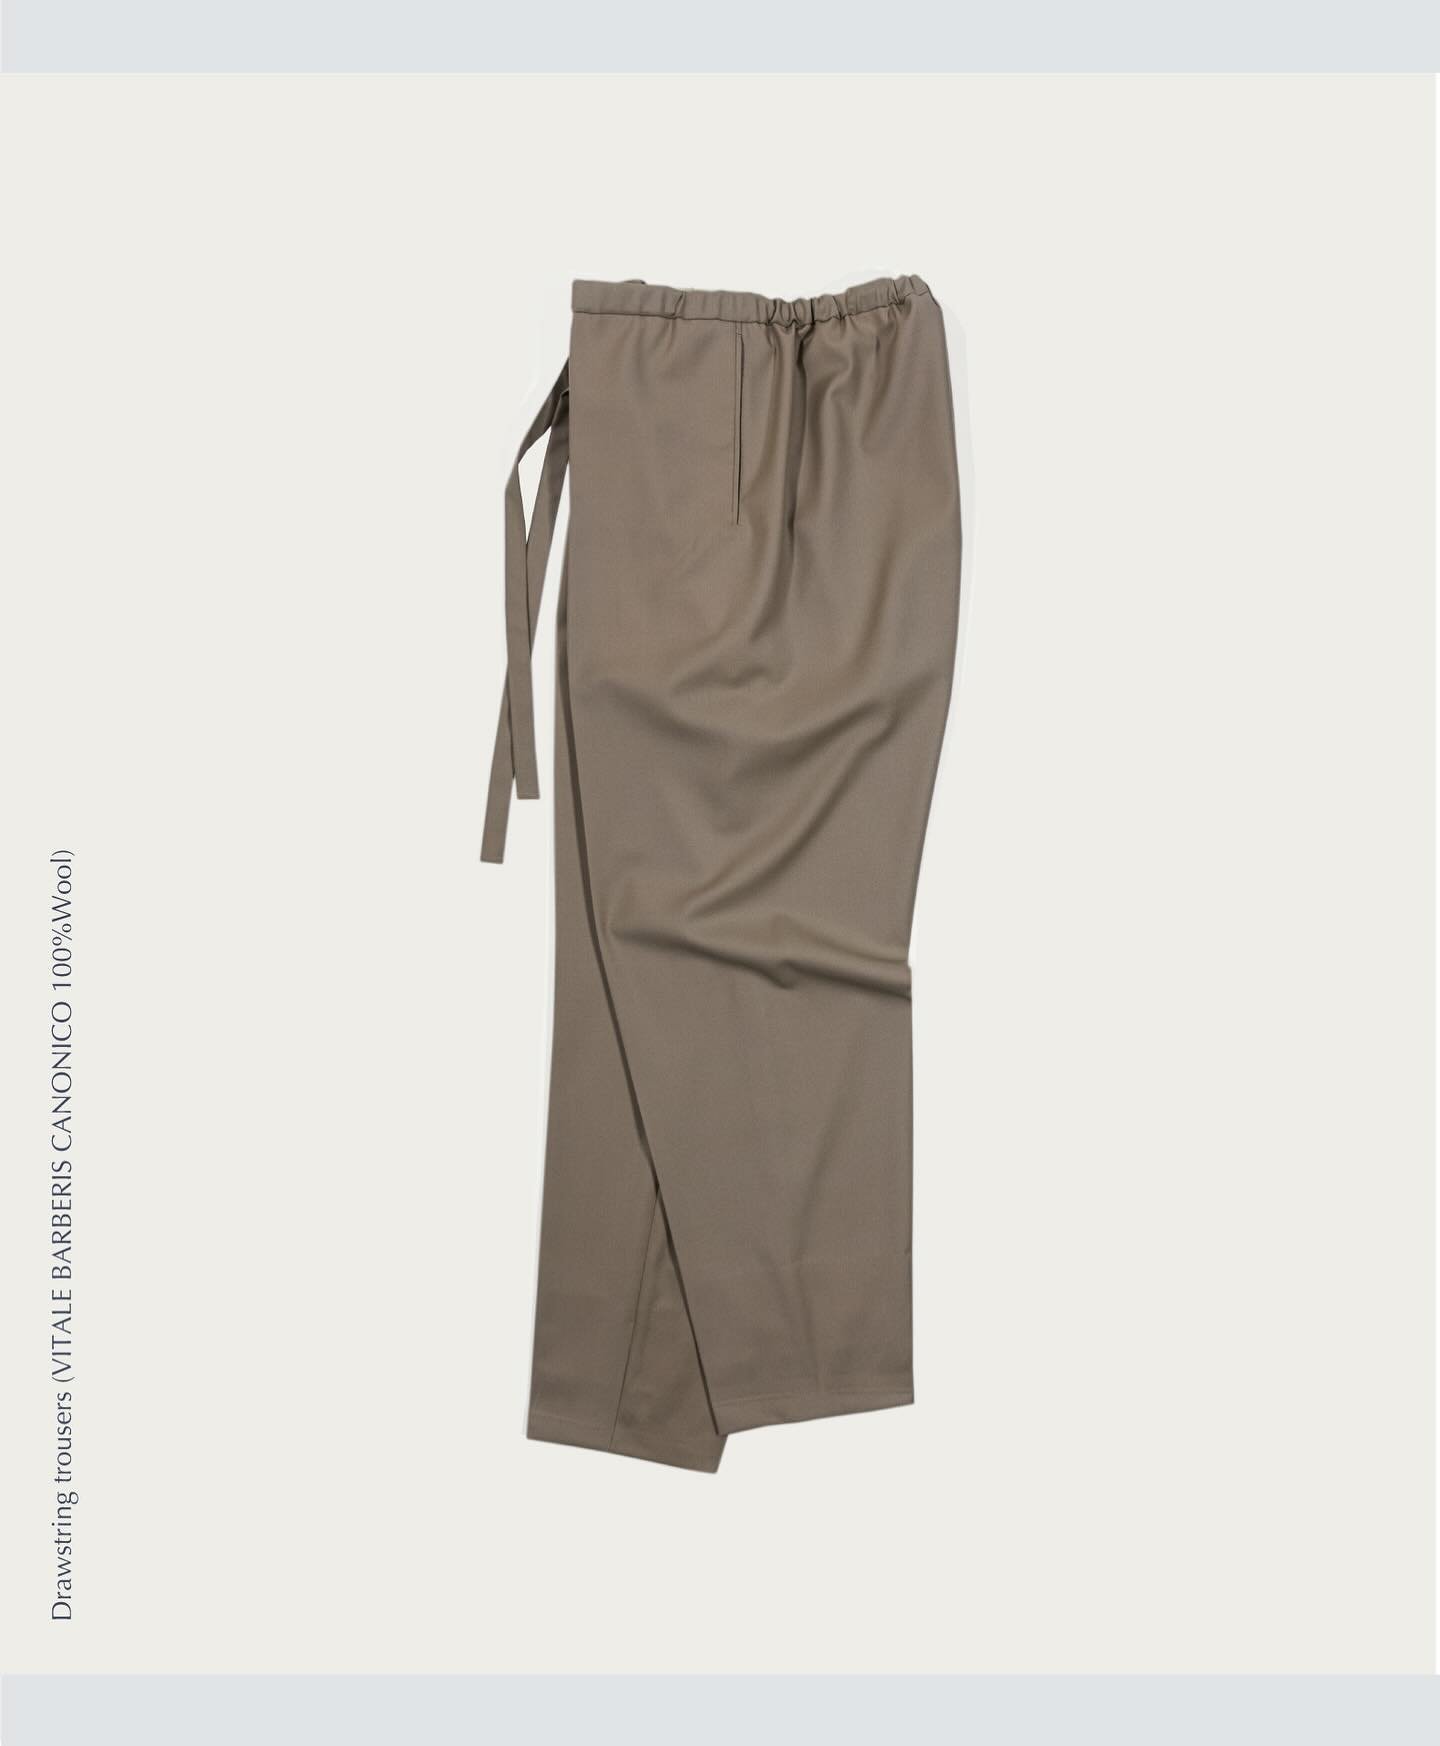 Drawstring trouser #yasutokimura #trouser #madetoorder #vitalebarberiscanonico #unisexclothing #madeinaustralia